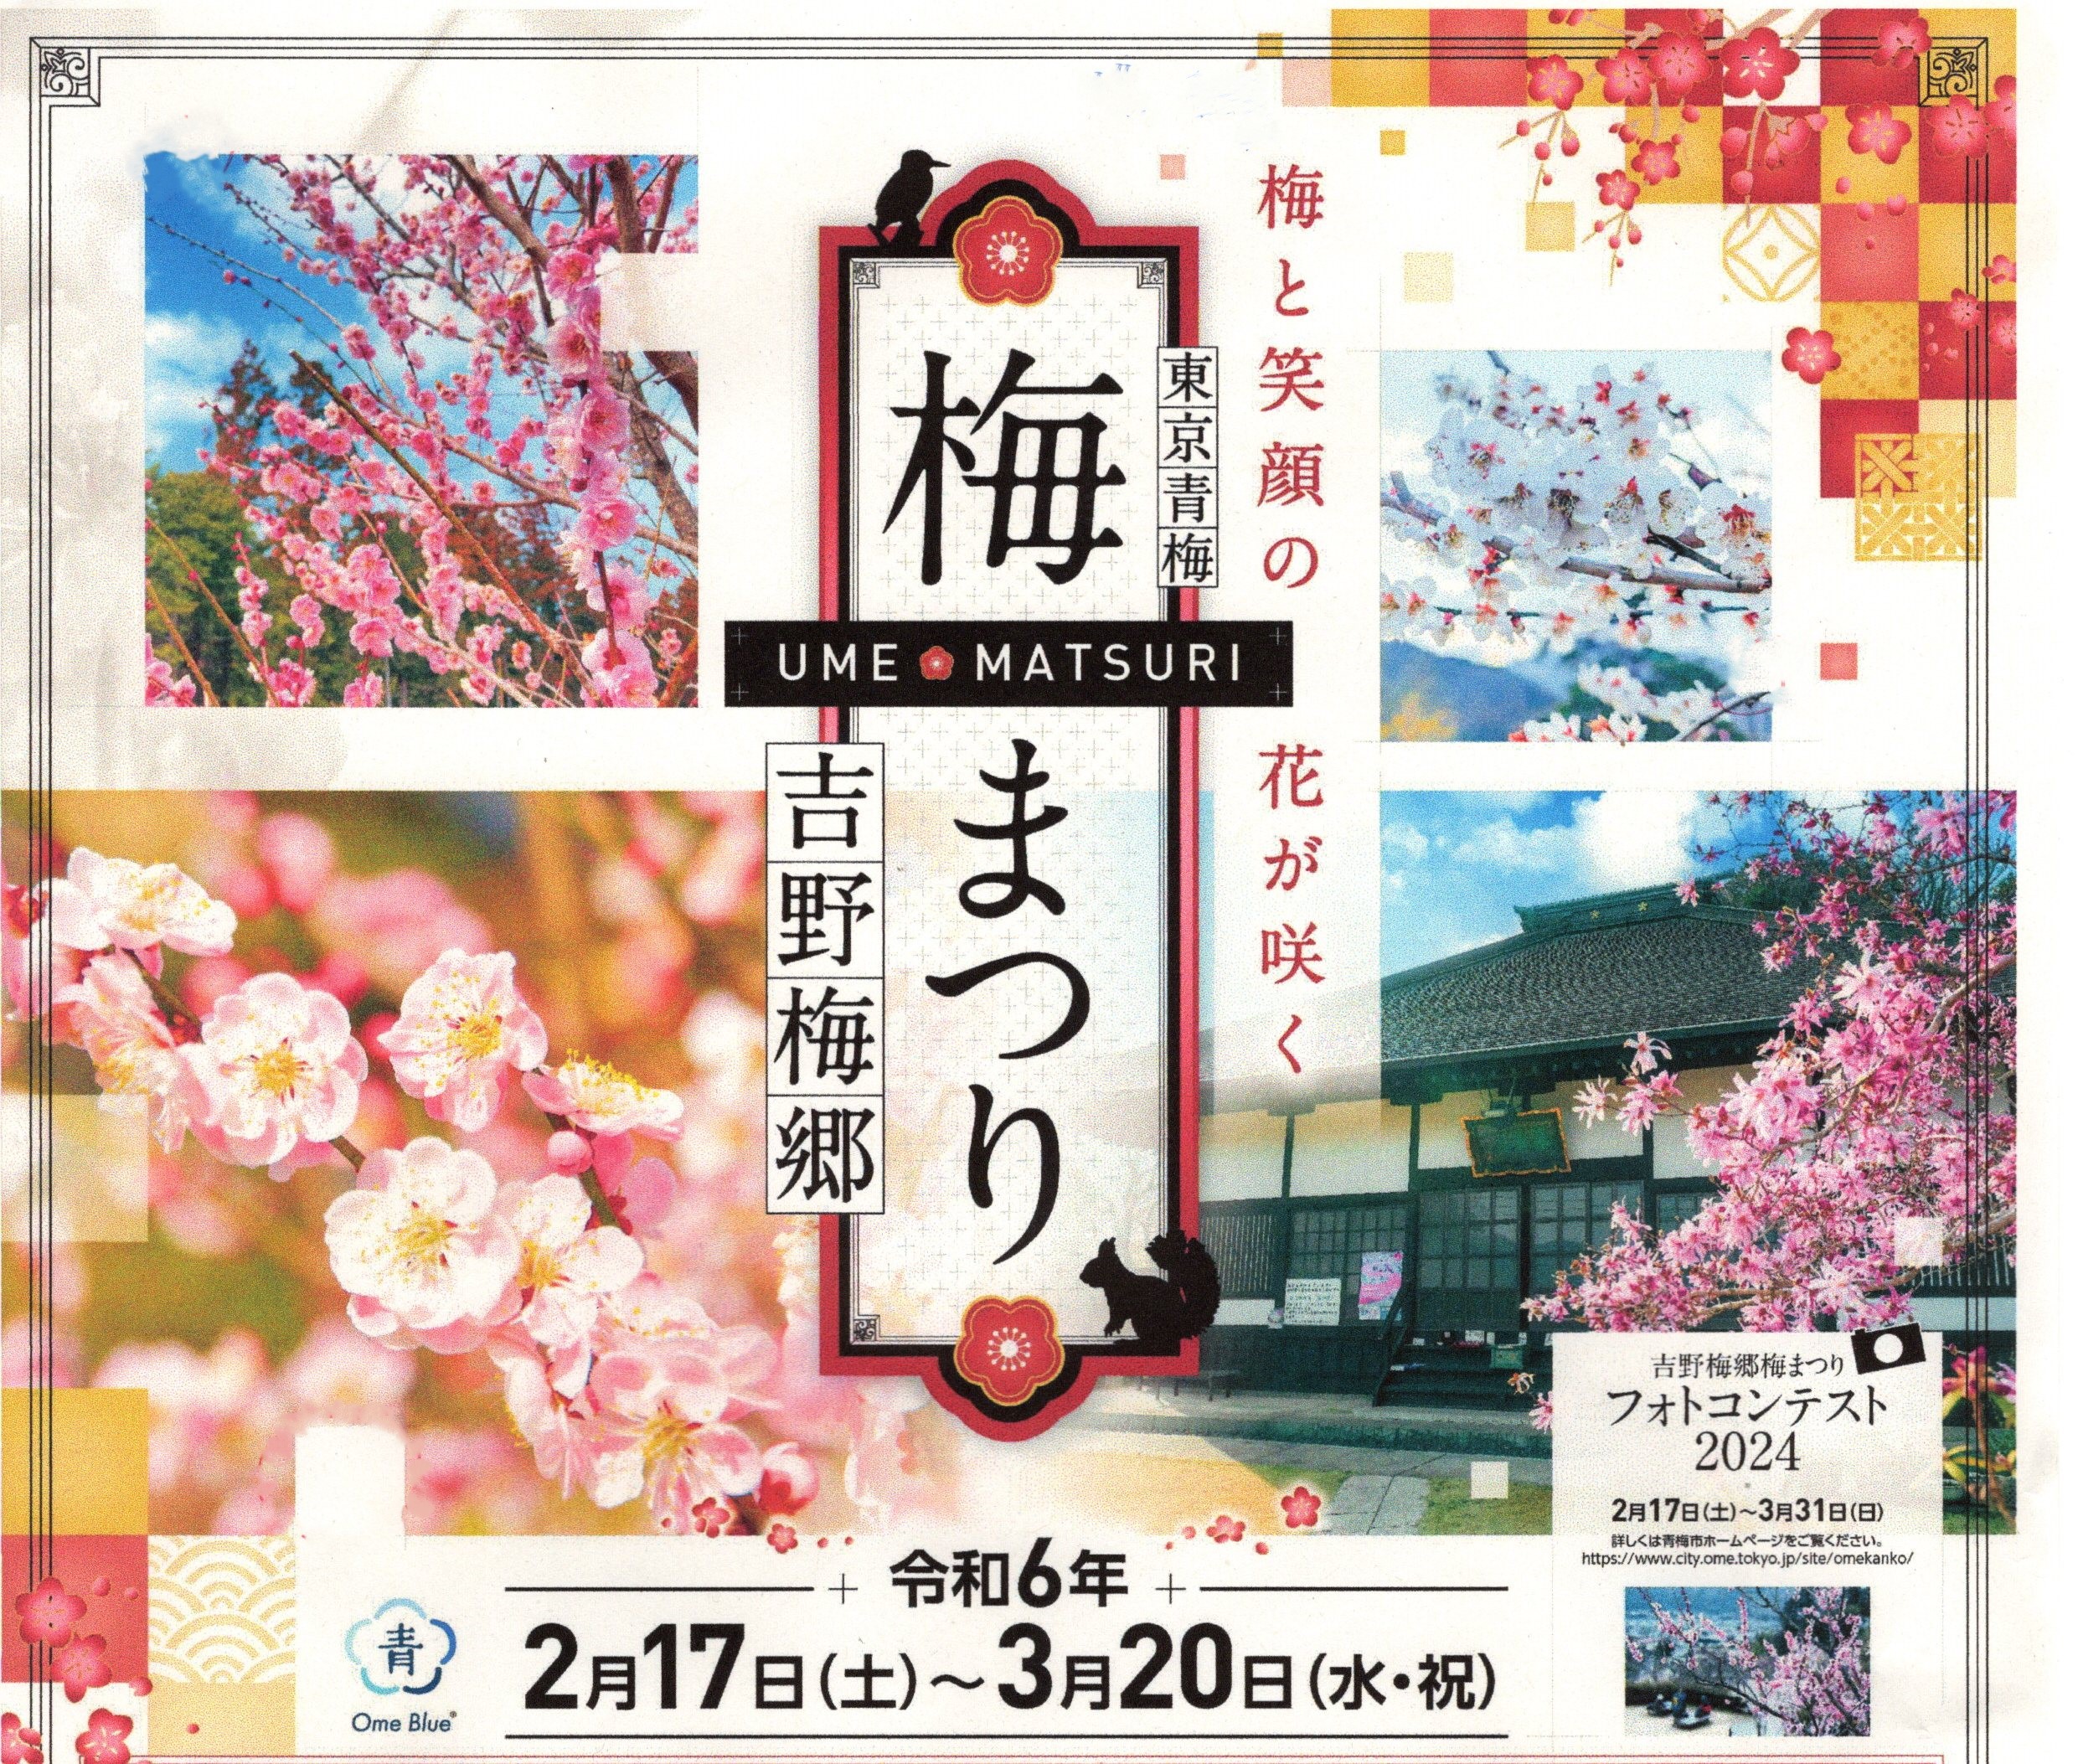 Yoshino Baigou Plum Blossom Festival